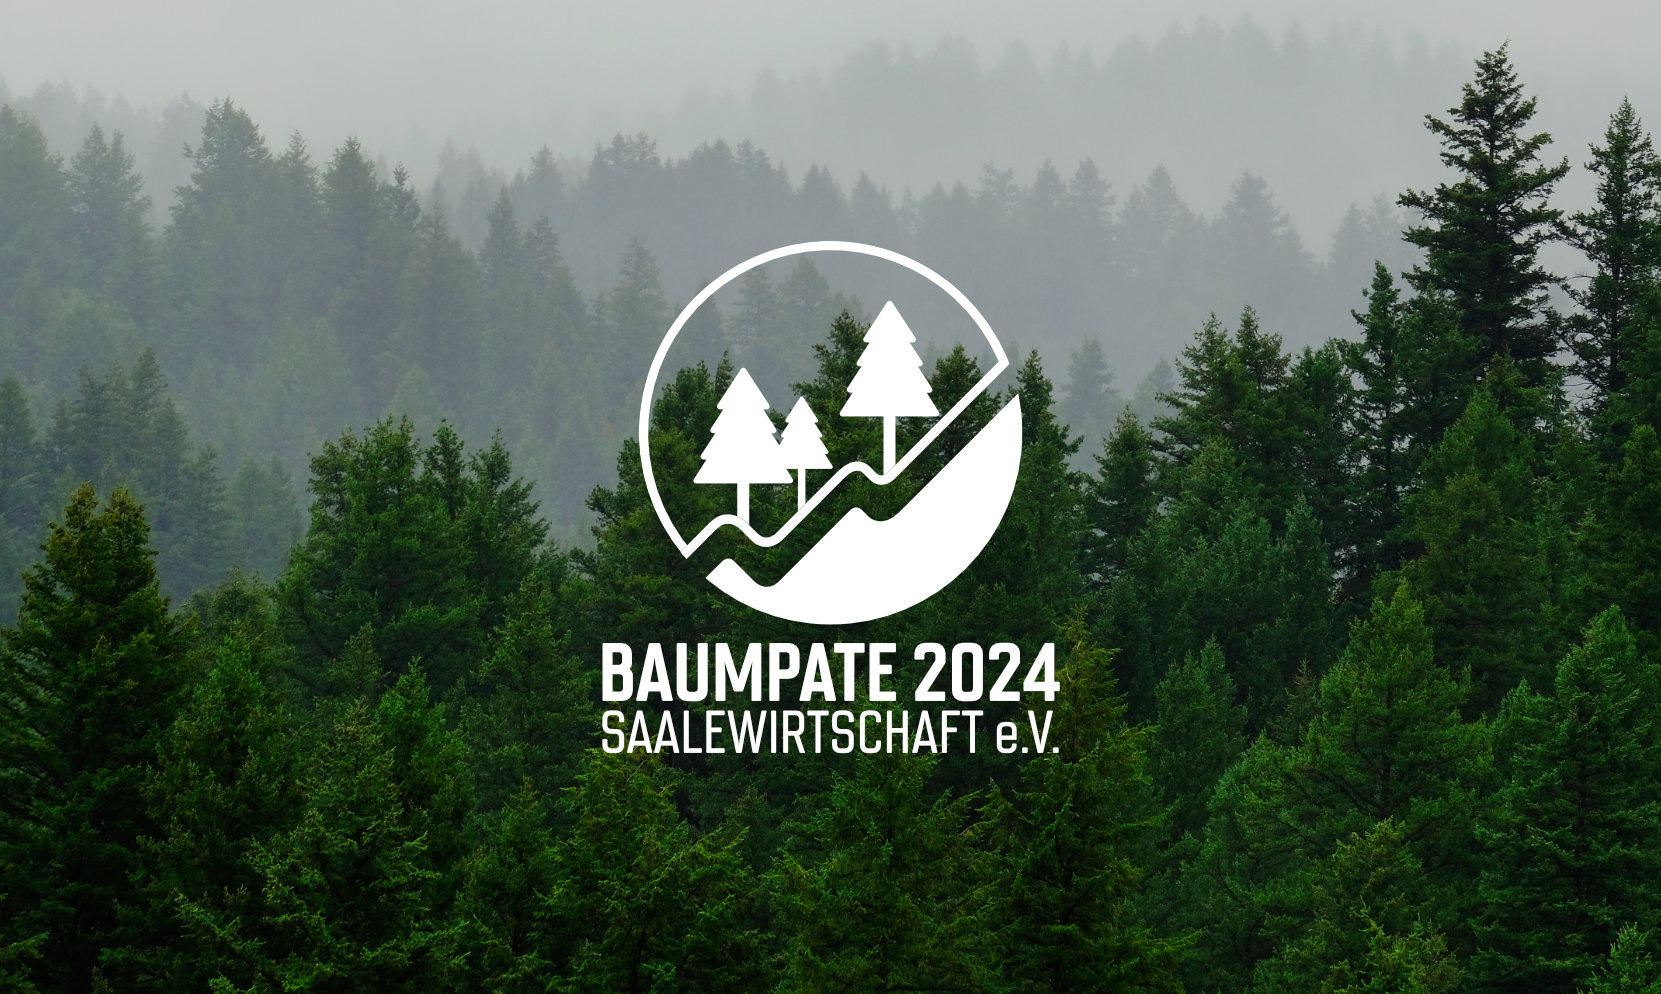 Aktion "Baumpate 2024"